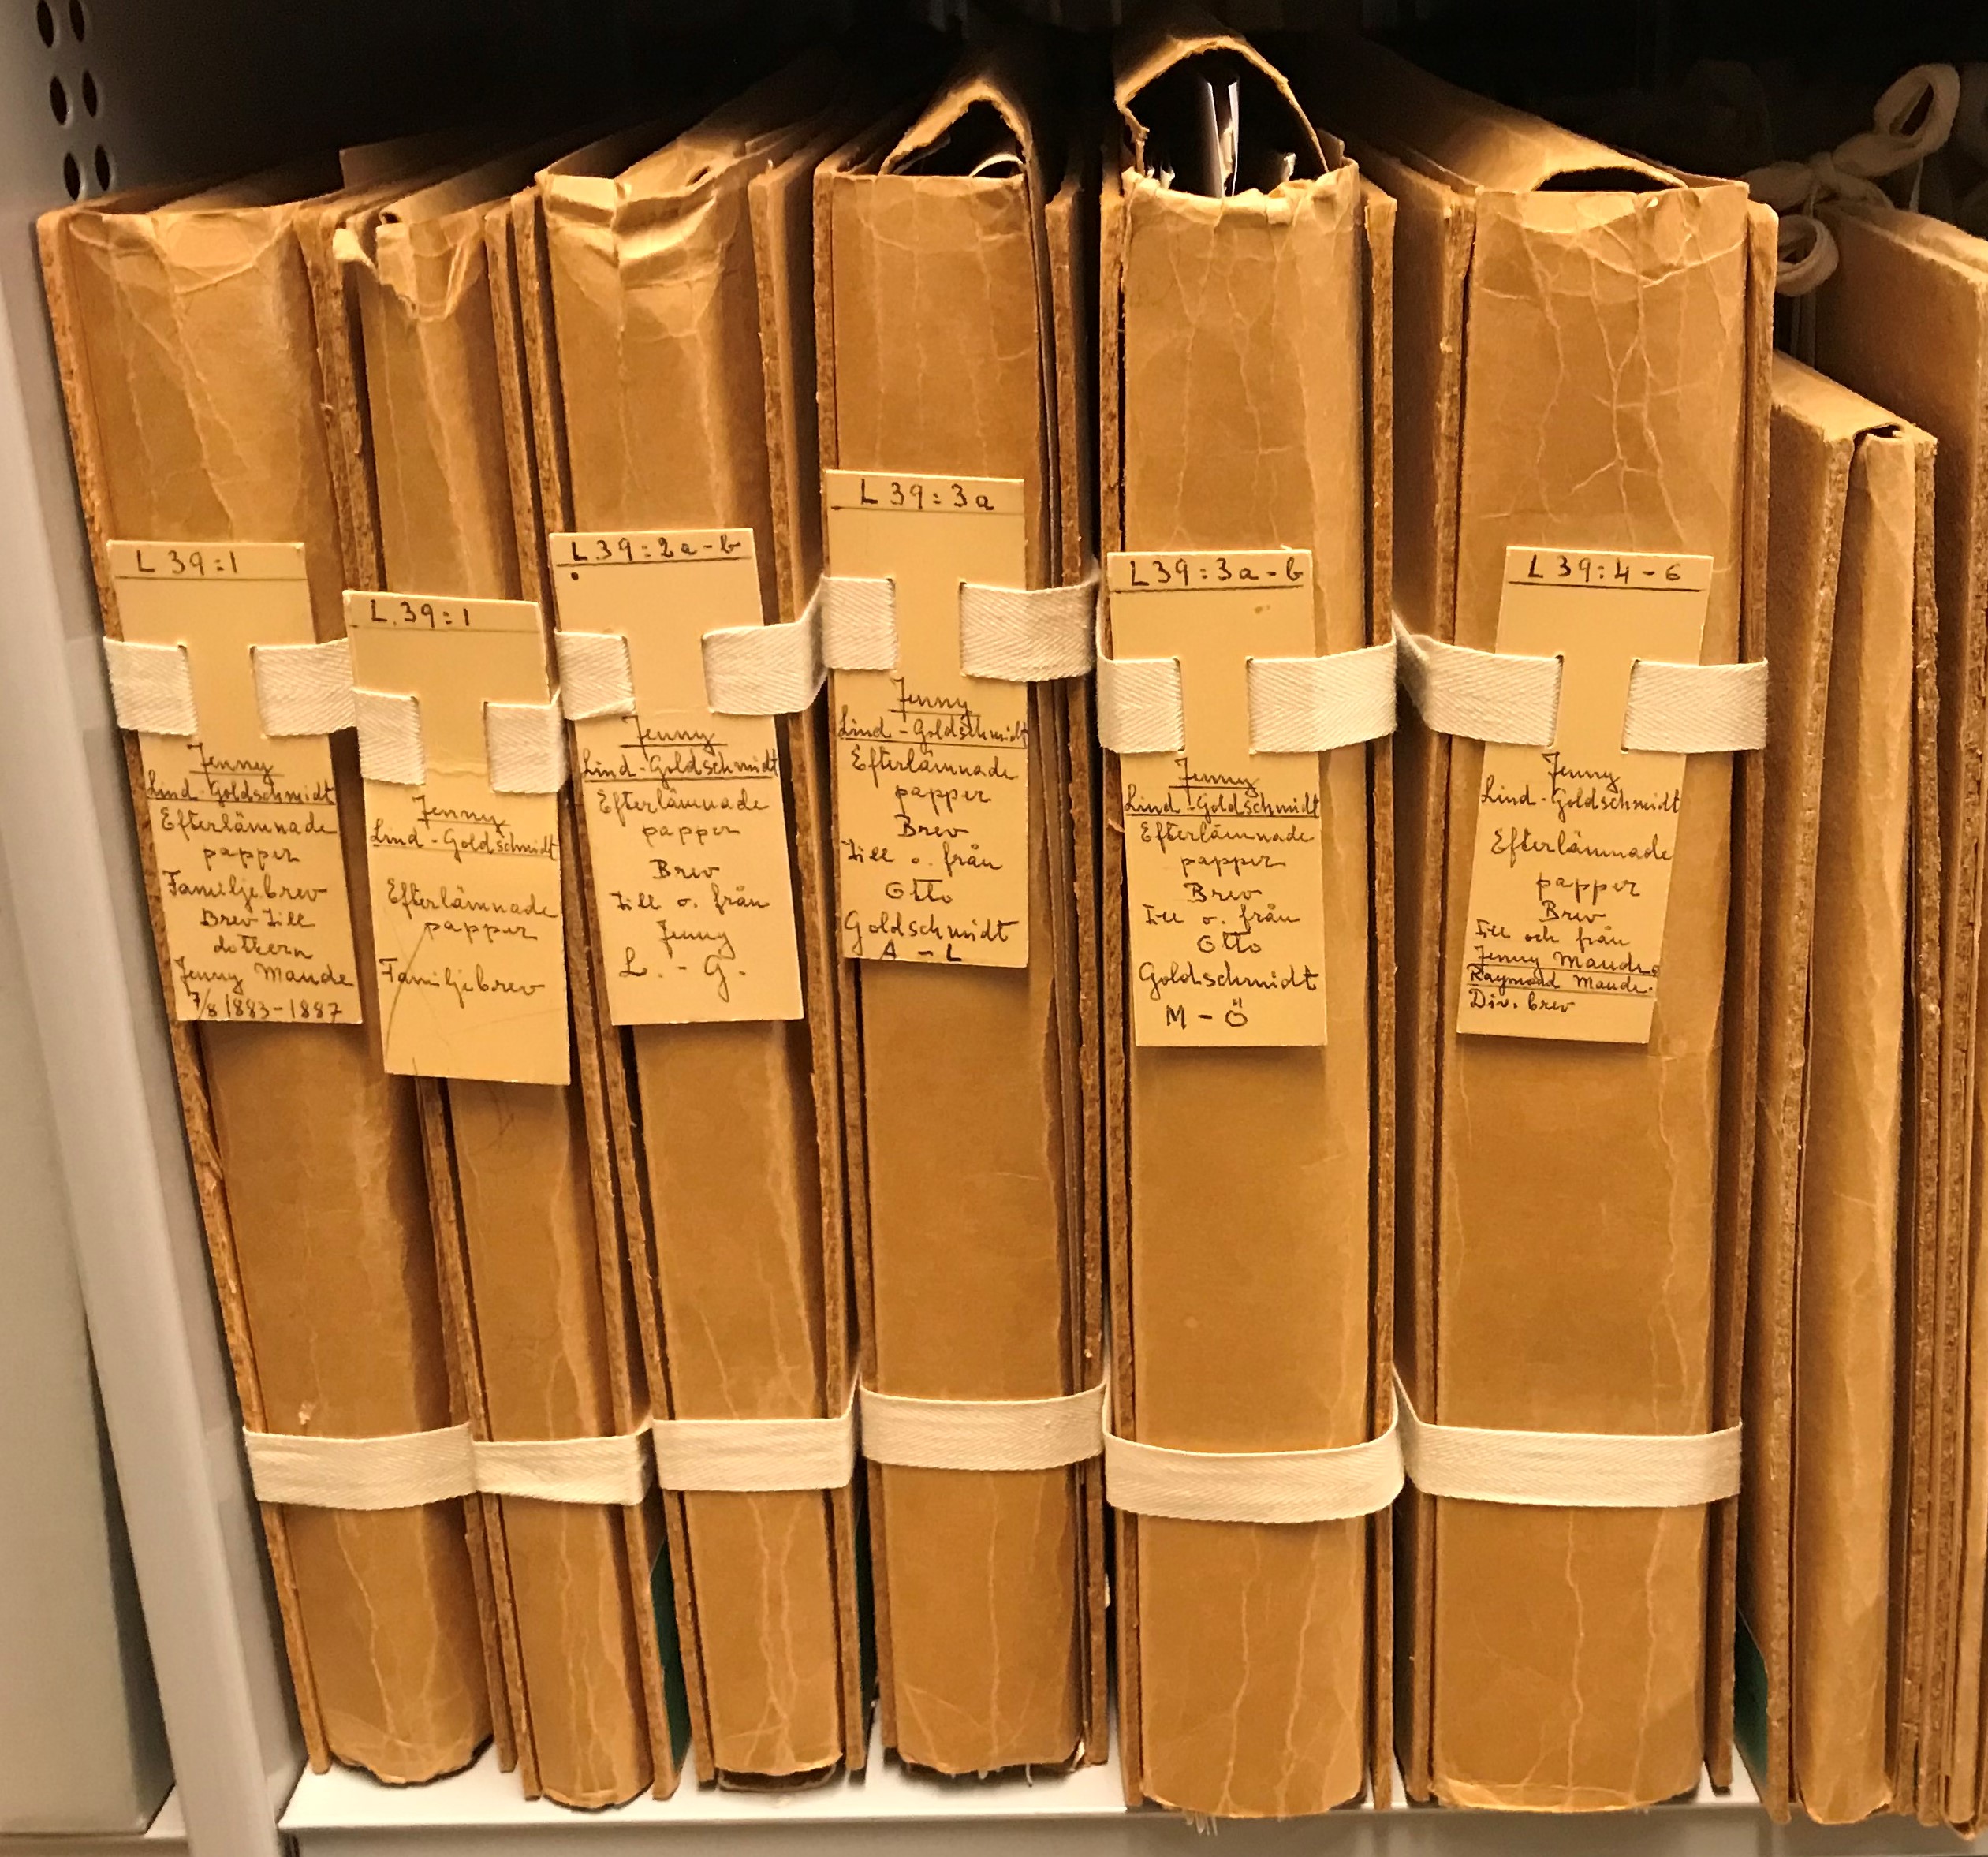 Sex bandkapslar fyllda med material ur Jenny Linds personarkiv, placerade i hylla i KB:s underjordiska magasin.